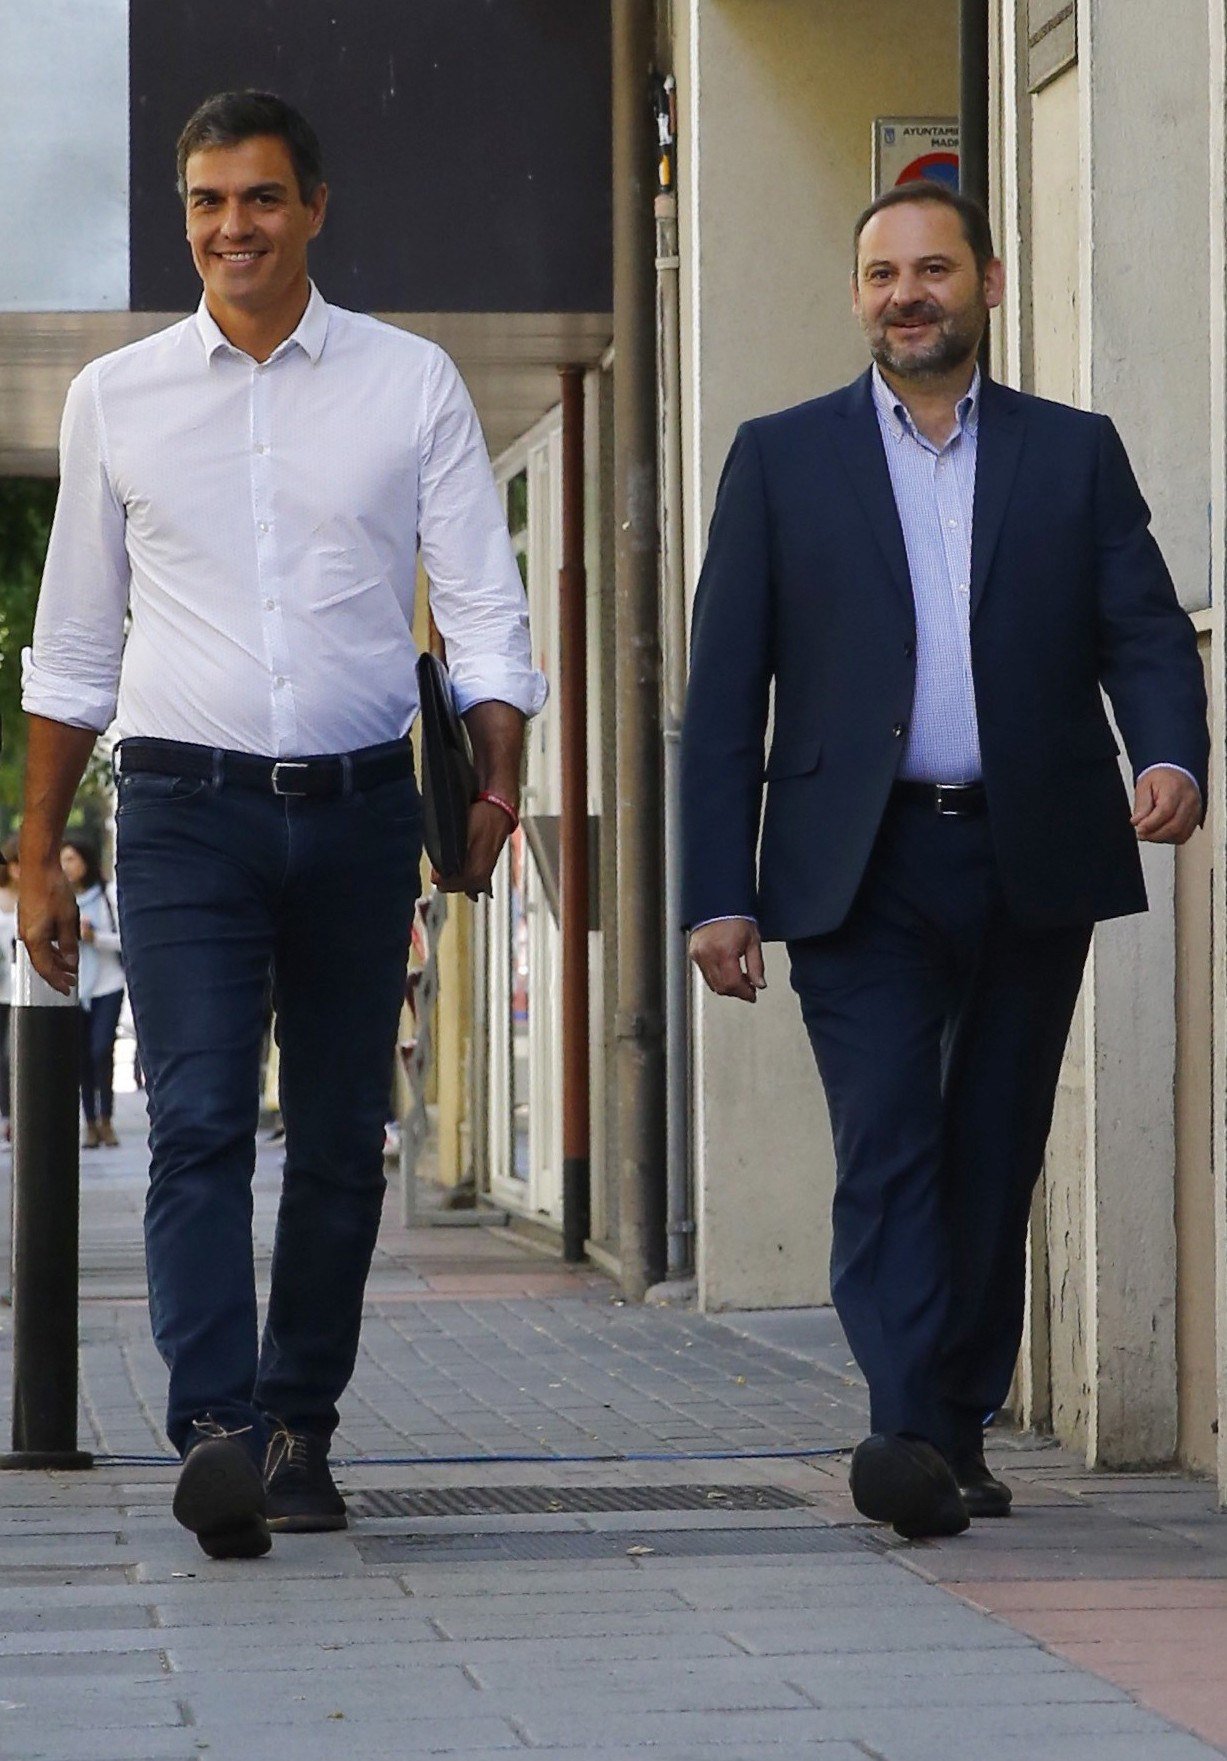 Ábalos replica a Parlon que "no hay tutelas" entre PSOE y PSC